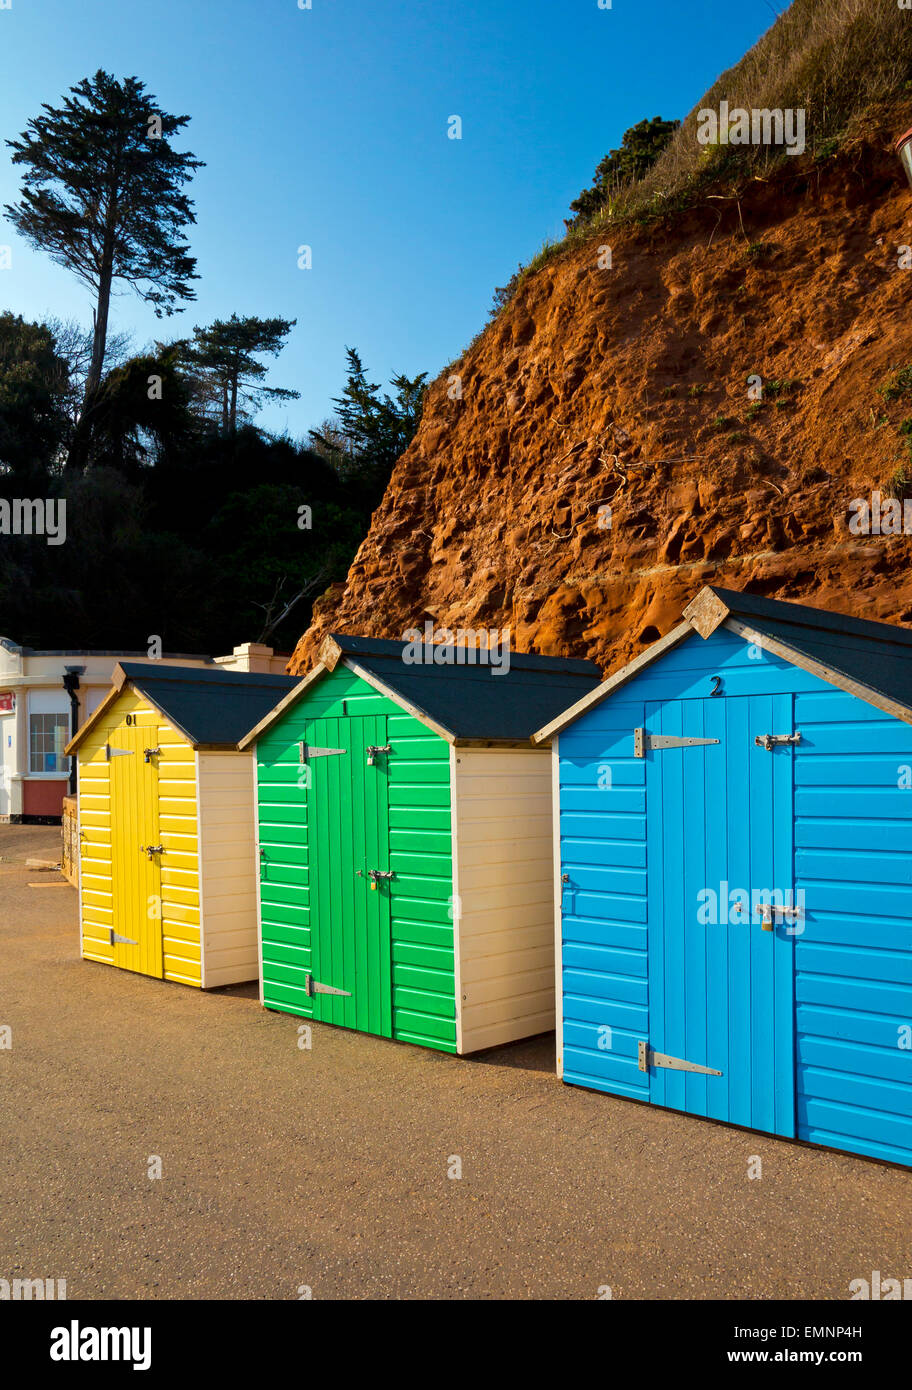 Tradicionales de madera pintadas de colores brillantes cabañas de playa en el paseo maritimo en Seaton un balneario en el sur de Devon, Inglaterra Foto de stock